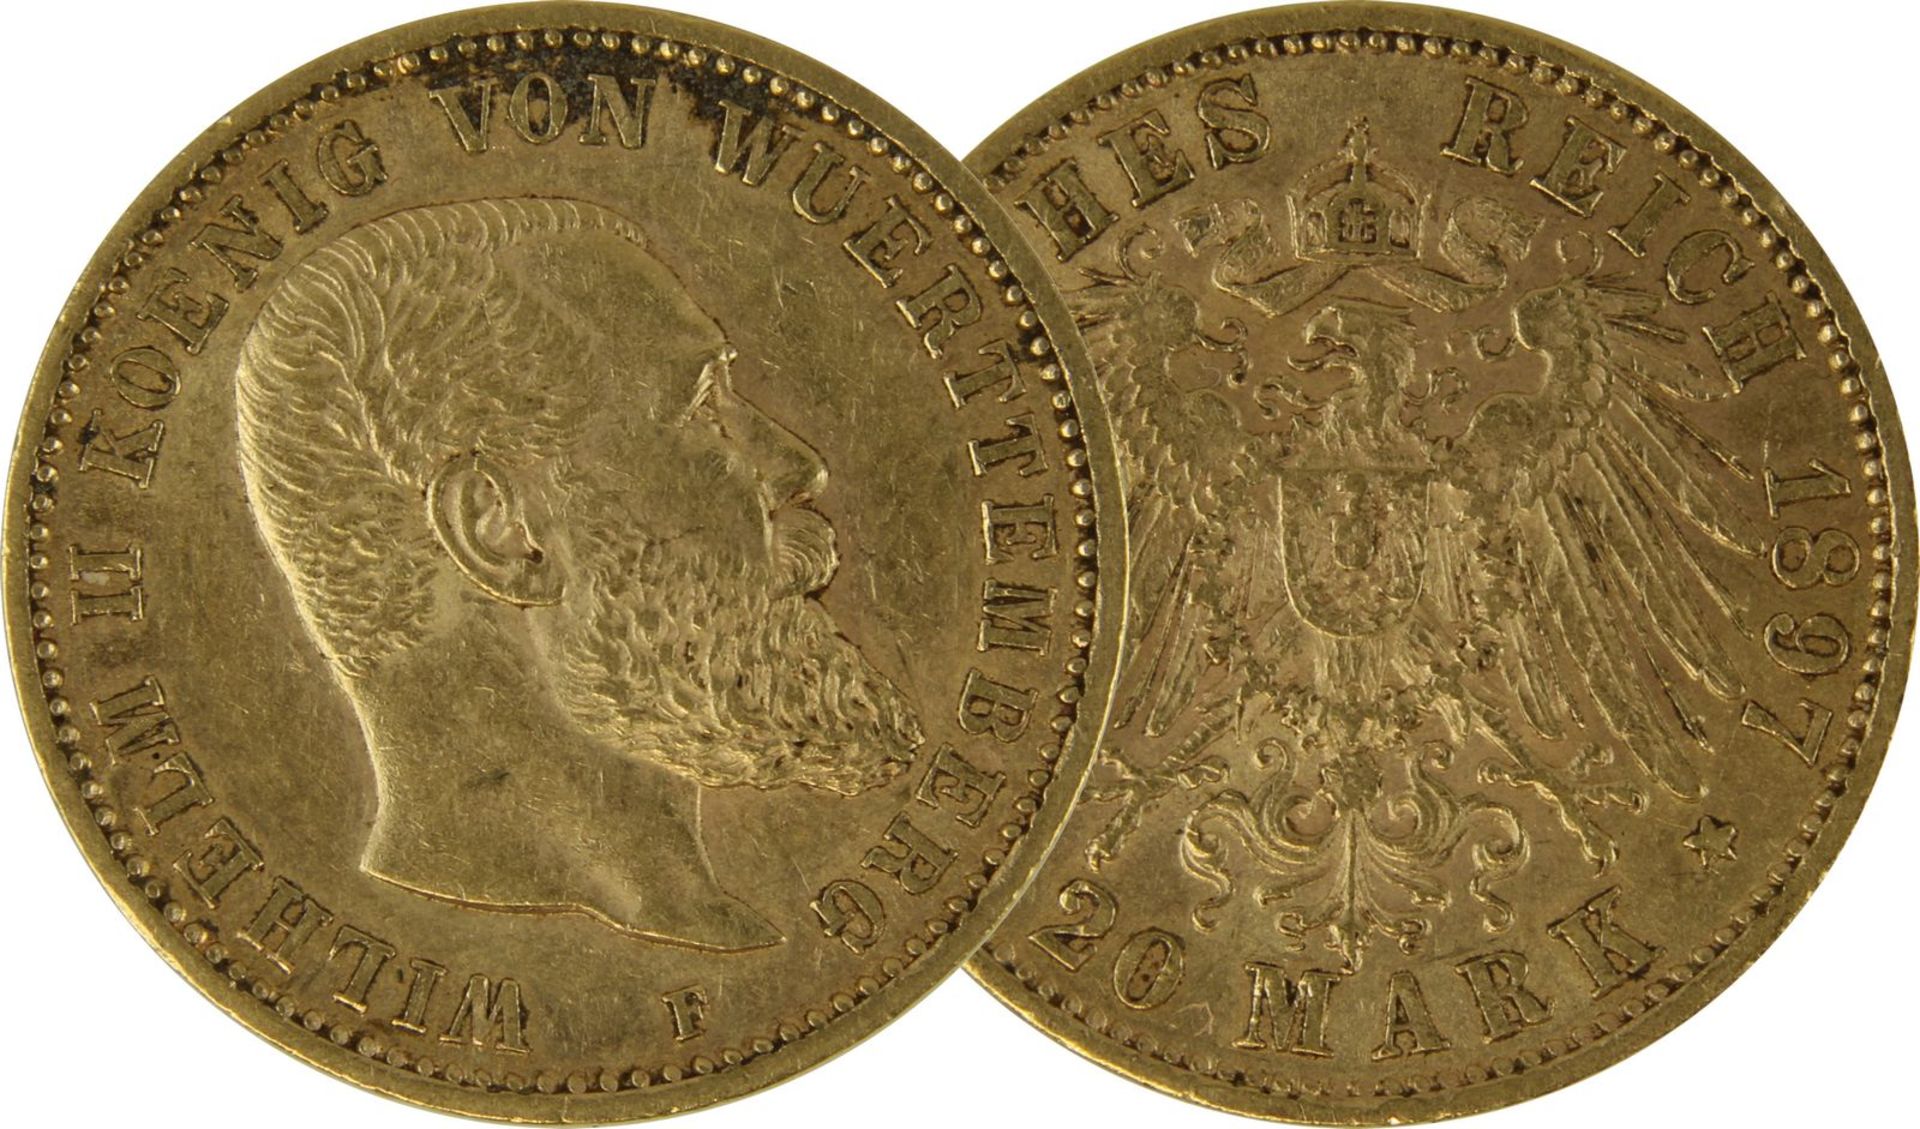 Goldmünze zu 20 Mark, Württemberg - Deutsches Reich 1897, Avers: Kopf Wilhelm II König von